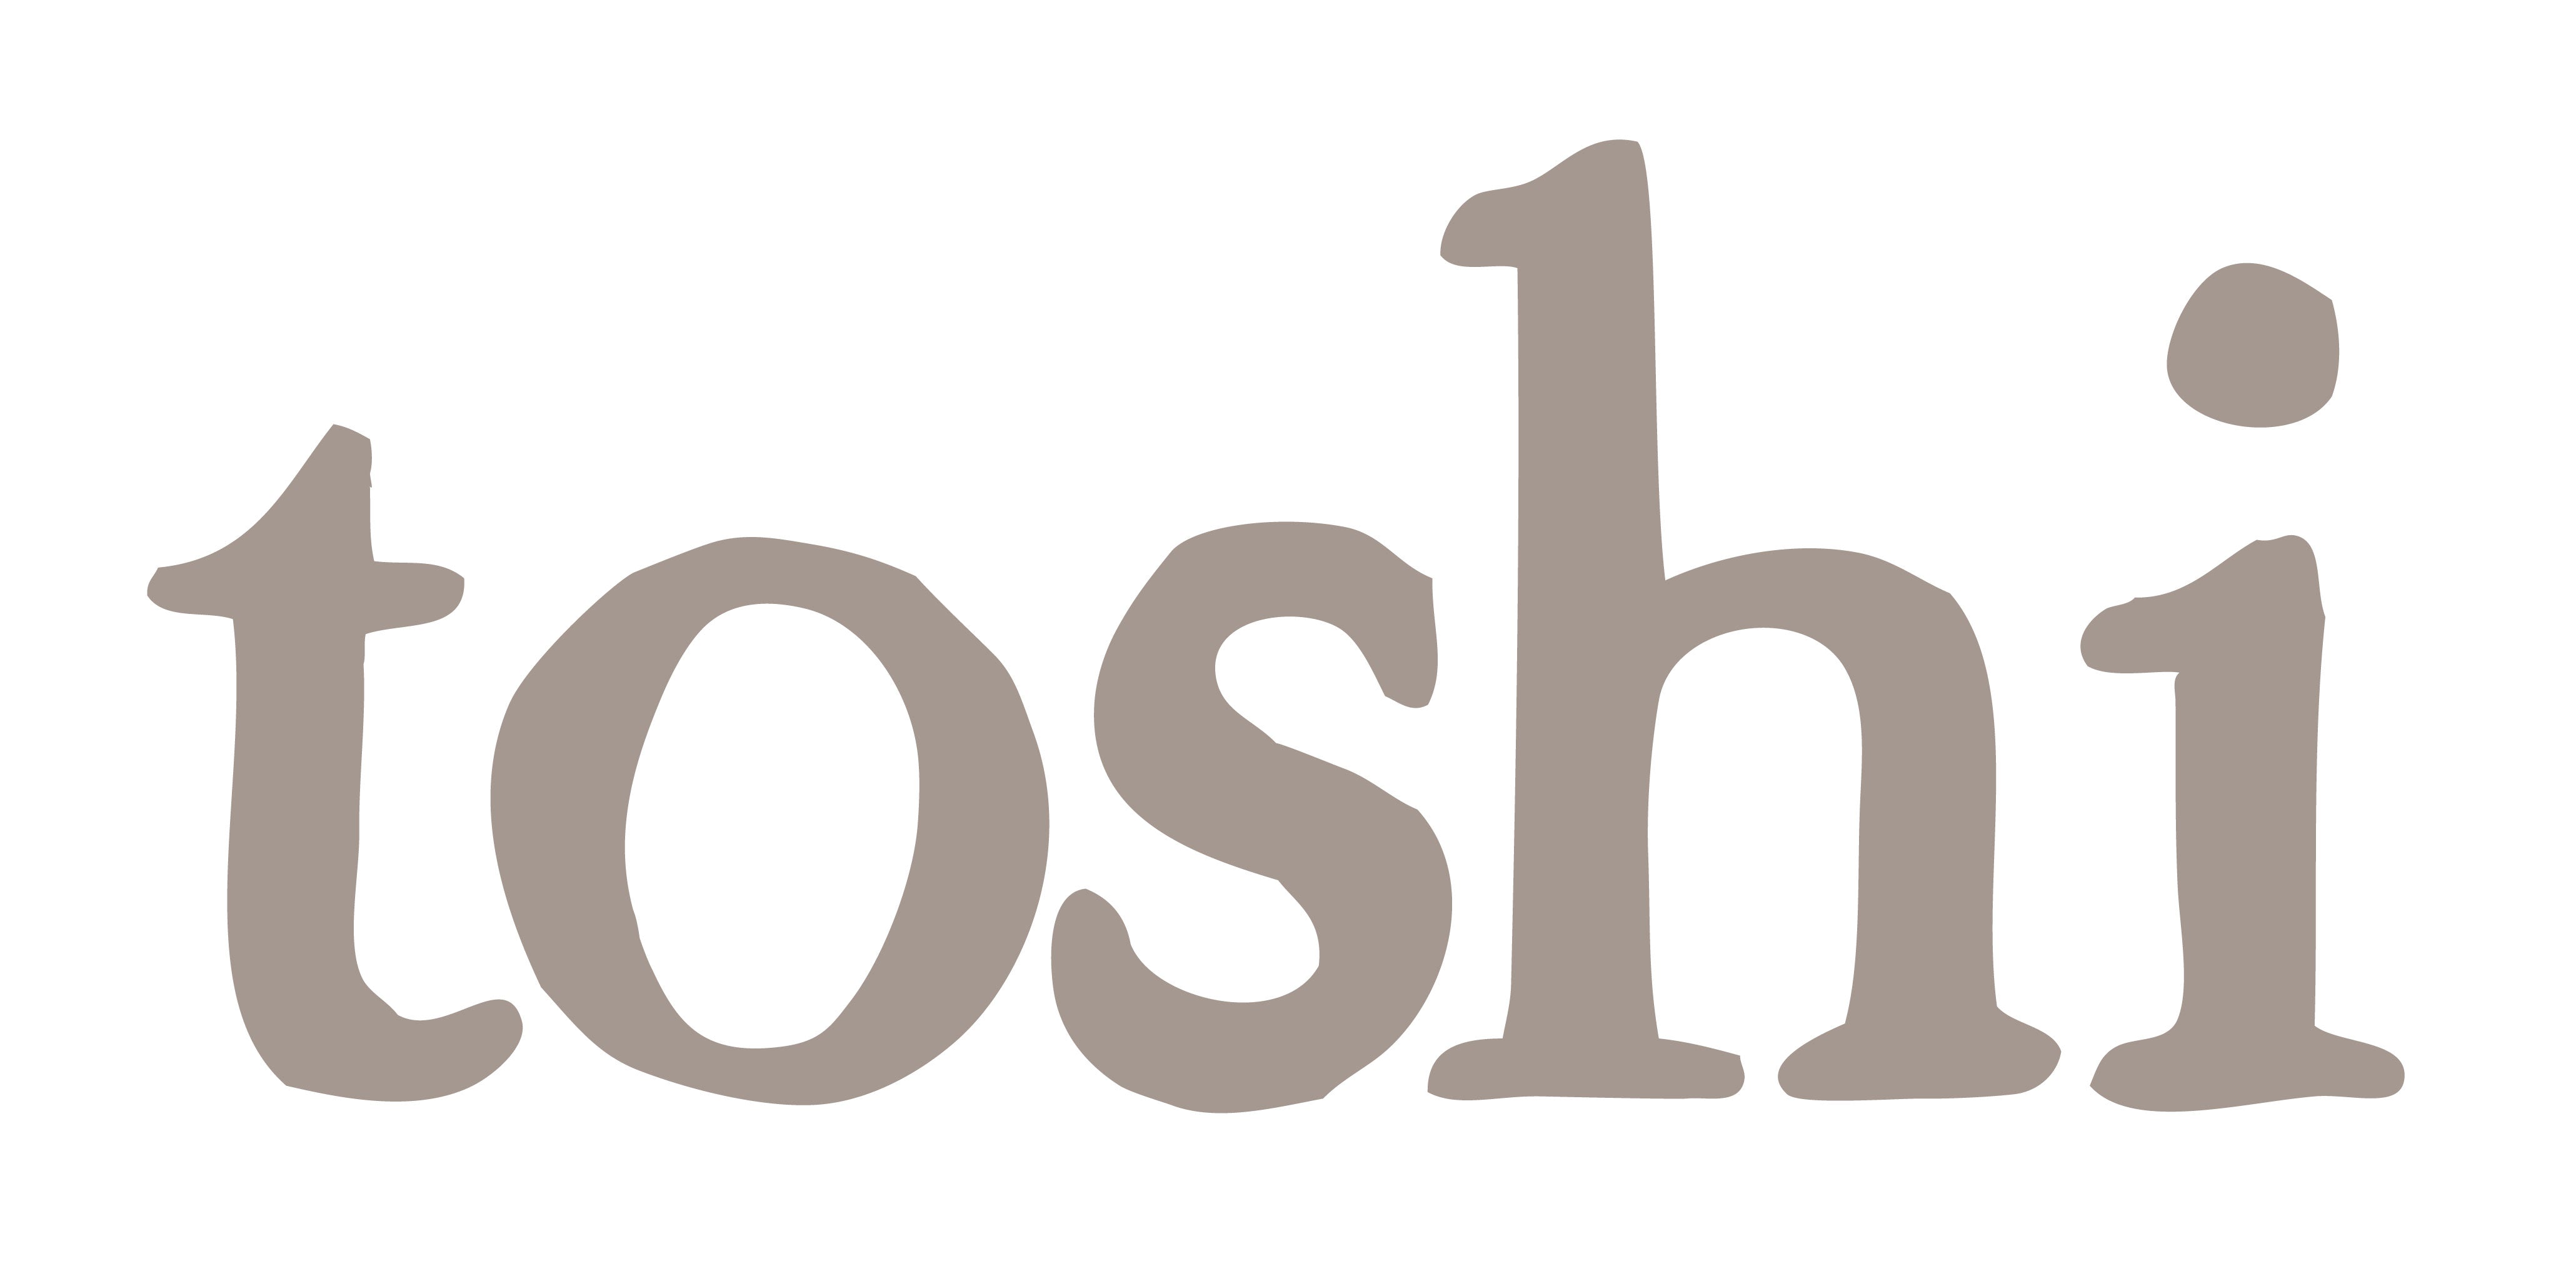 Toshi